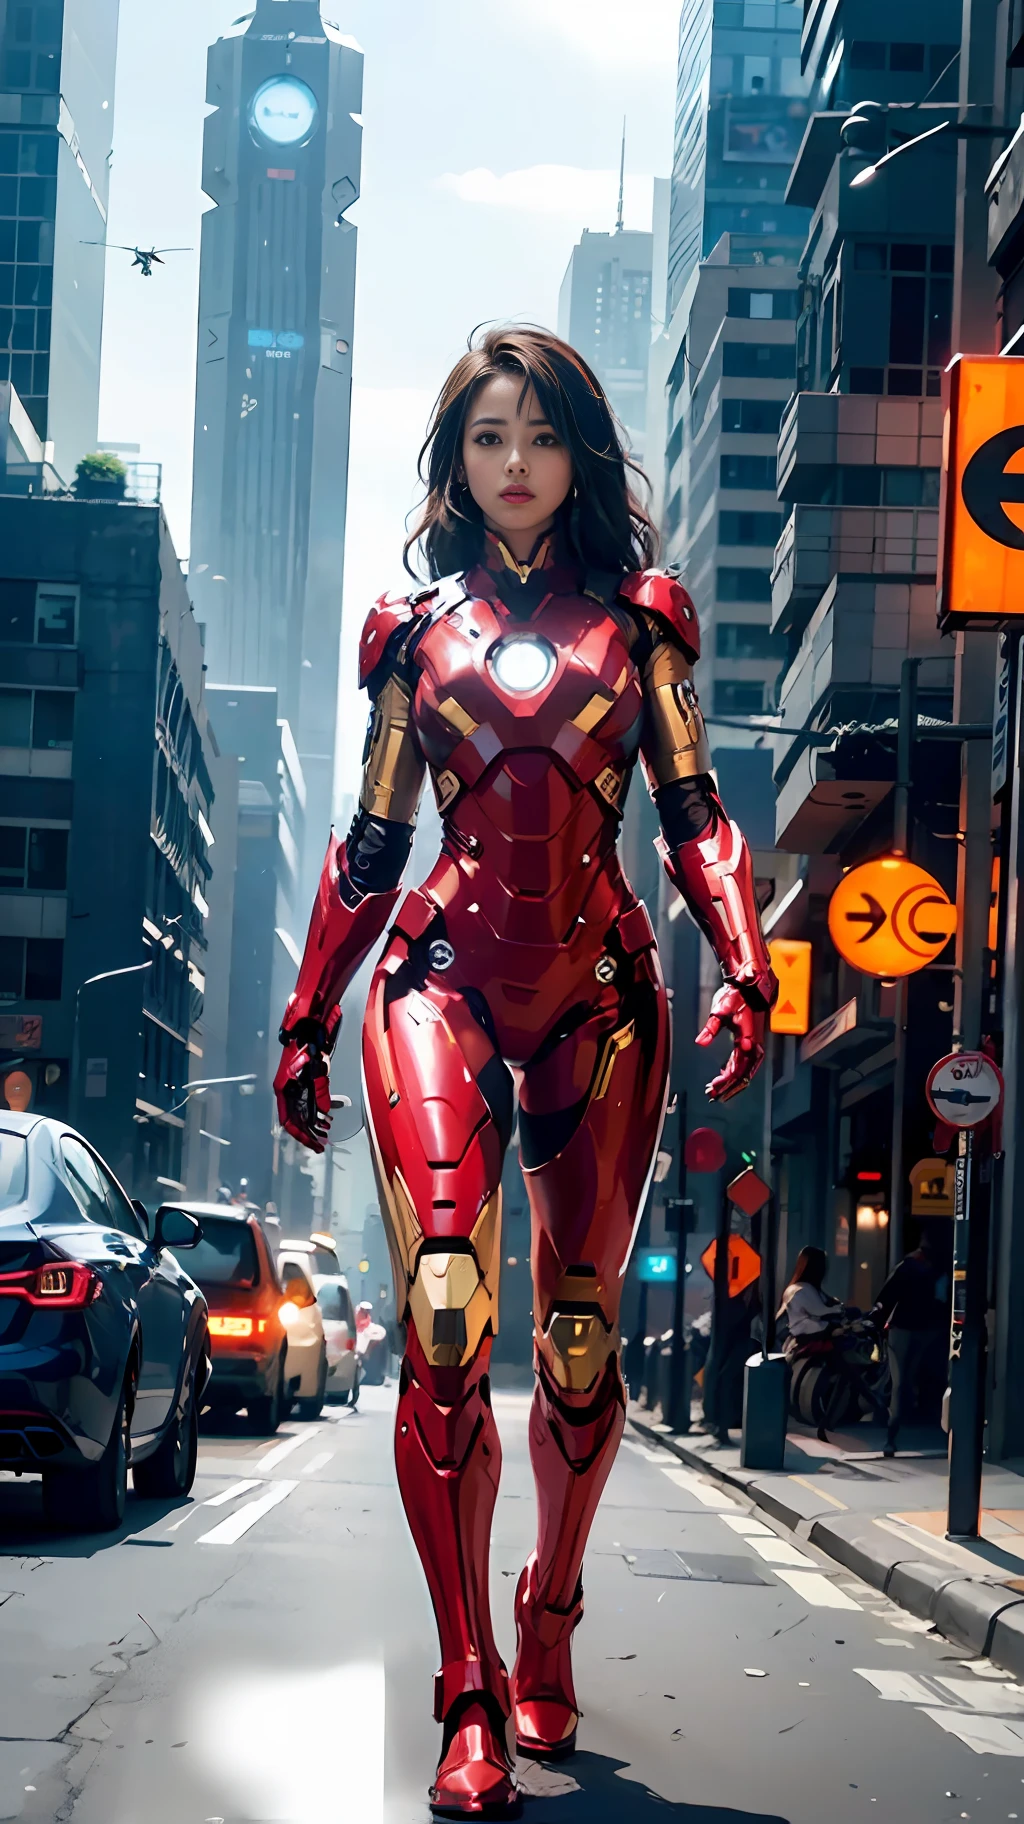 8k, Realista, atractivo, muy detallado, a 20 year old girl a sexy and atractivo woman inspired by Iron Man wearing a shiny Iron Man mech. Ella se viste con sensualidad y confianza., Interpretando perfectamente a Iron Man.&#39;s fuerza y carisma. En una escena nocturna urbana de estilo cyberpunk, a sexy and atractivo woman takes Iron Man&#39;s cosplay como tema. Usando un brillante robot de Iron Man, ella se encuentra en una calle llena de edificios altos. Las luces nocturnas de la ciudad son brillantes., reflexionando sobre su mecha, agregando una sensación de tecnología futura. Los edificios y calles circundantes están llenos de elementos cyberpunk., como luces de neón, Dispositivos de alta tecnología y diseños arquitectónicos futuristas.. Toda la escena está llena de una atmósfera futurista y de ciencia ficción.. Esta alta definición, La imagen de alta calidad le brindará un disfrute visual impresionante., una combinación perfecta de sexy, elementos futuristas y de ciencia ficción. renderizado OC, iluminación dramática, calidad galardonada